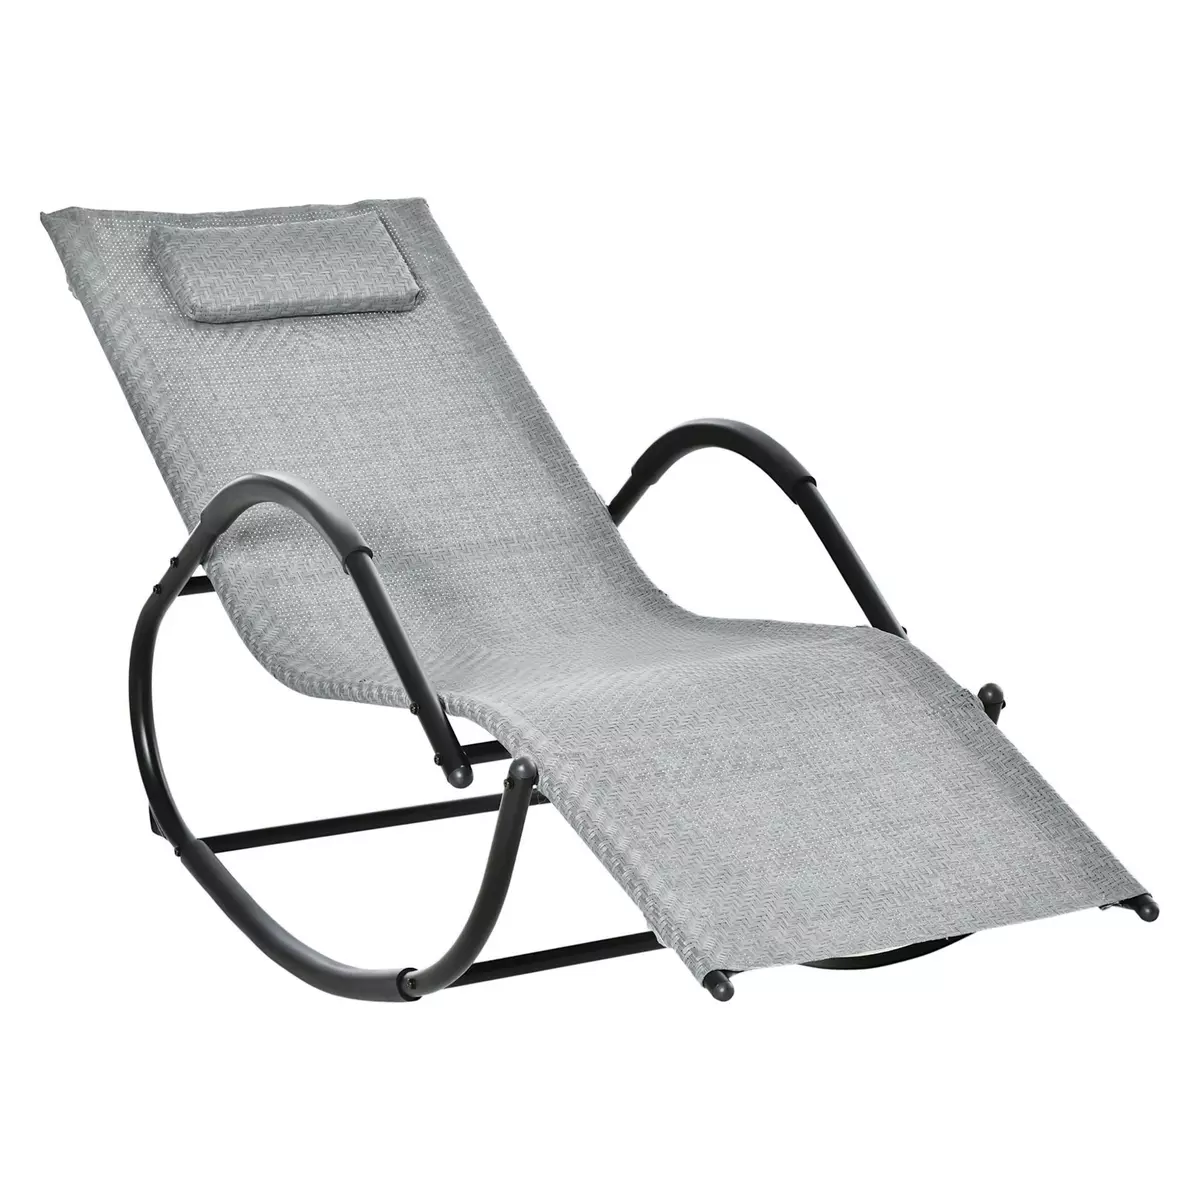 OUTSUNNY Chaise longue à bascule rocking chair design contemporain dim. 160L x 61l x 79H cm métal textilène gris